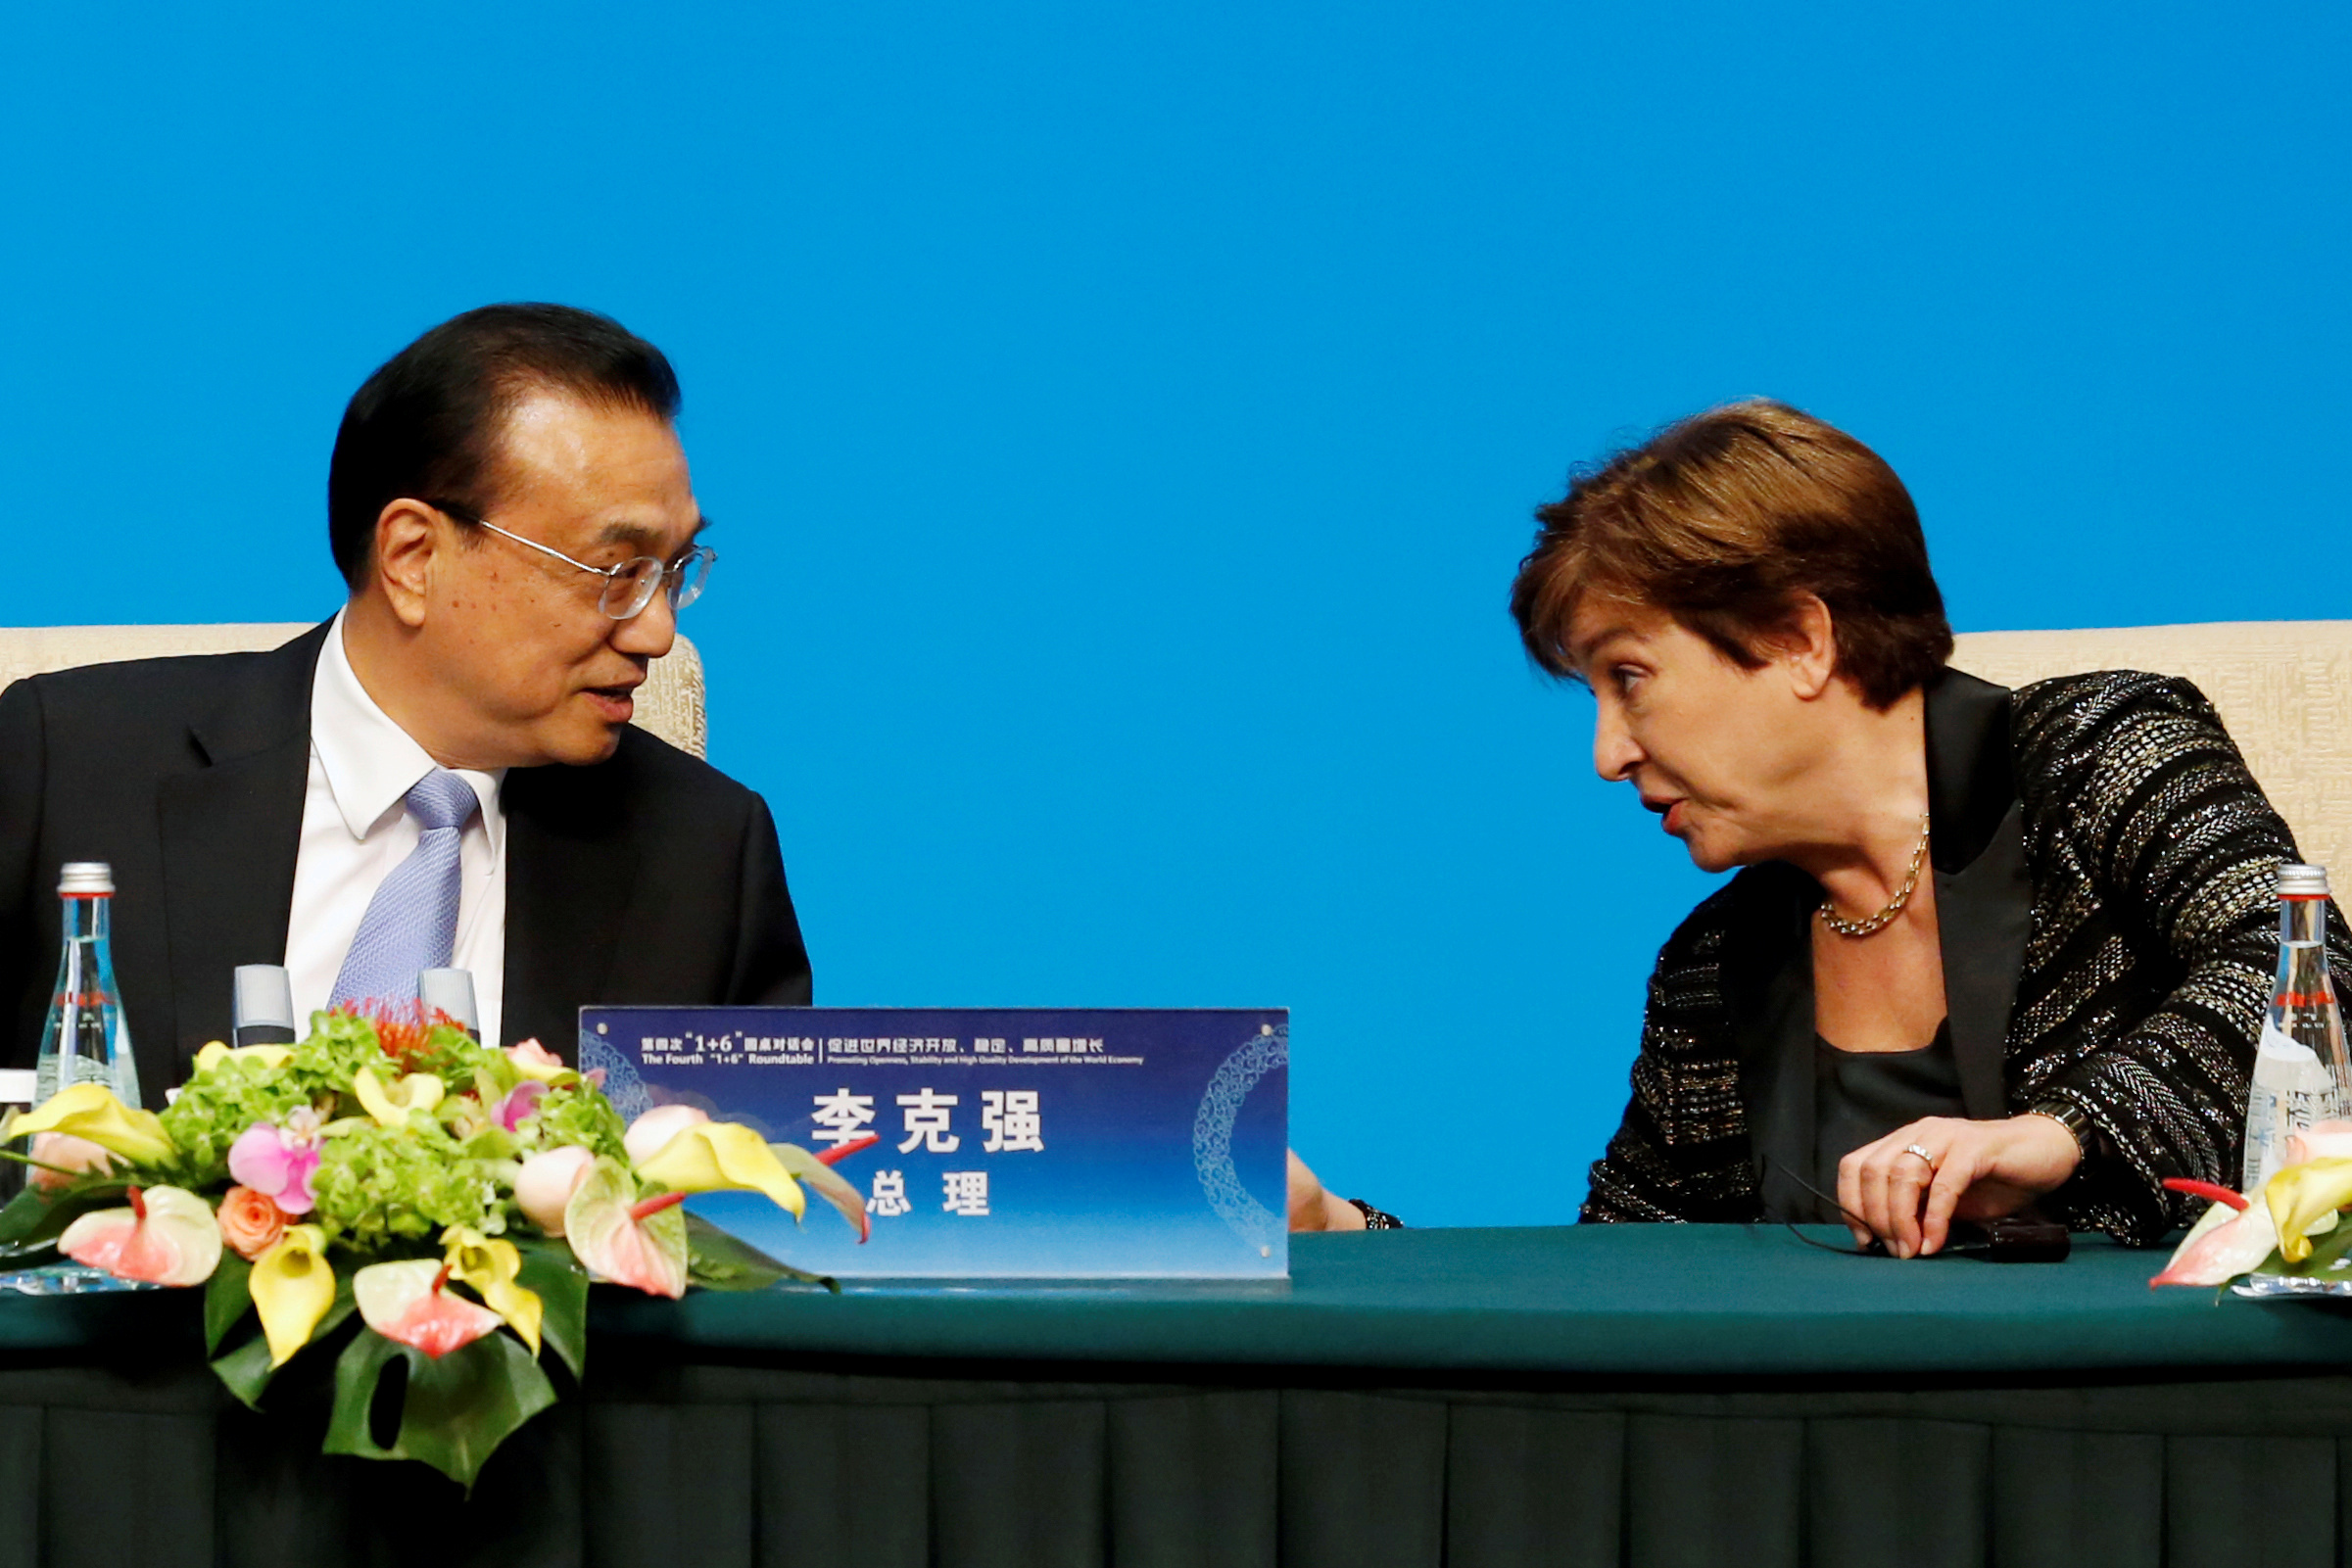 La directora del FMI, Georgieva, con un alto funcionario chino, a poco de asumir su cargo en el FMI
REUTERS/Florence Lo/File Photo